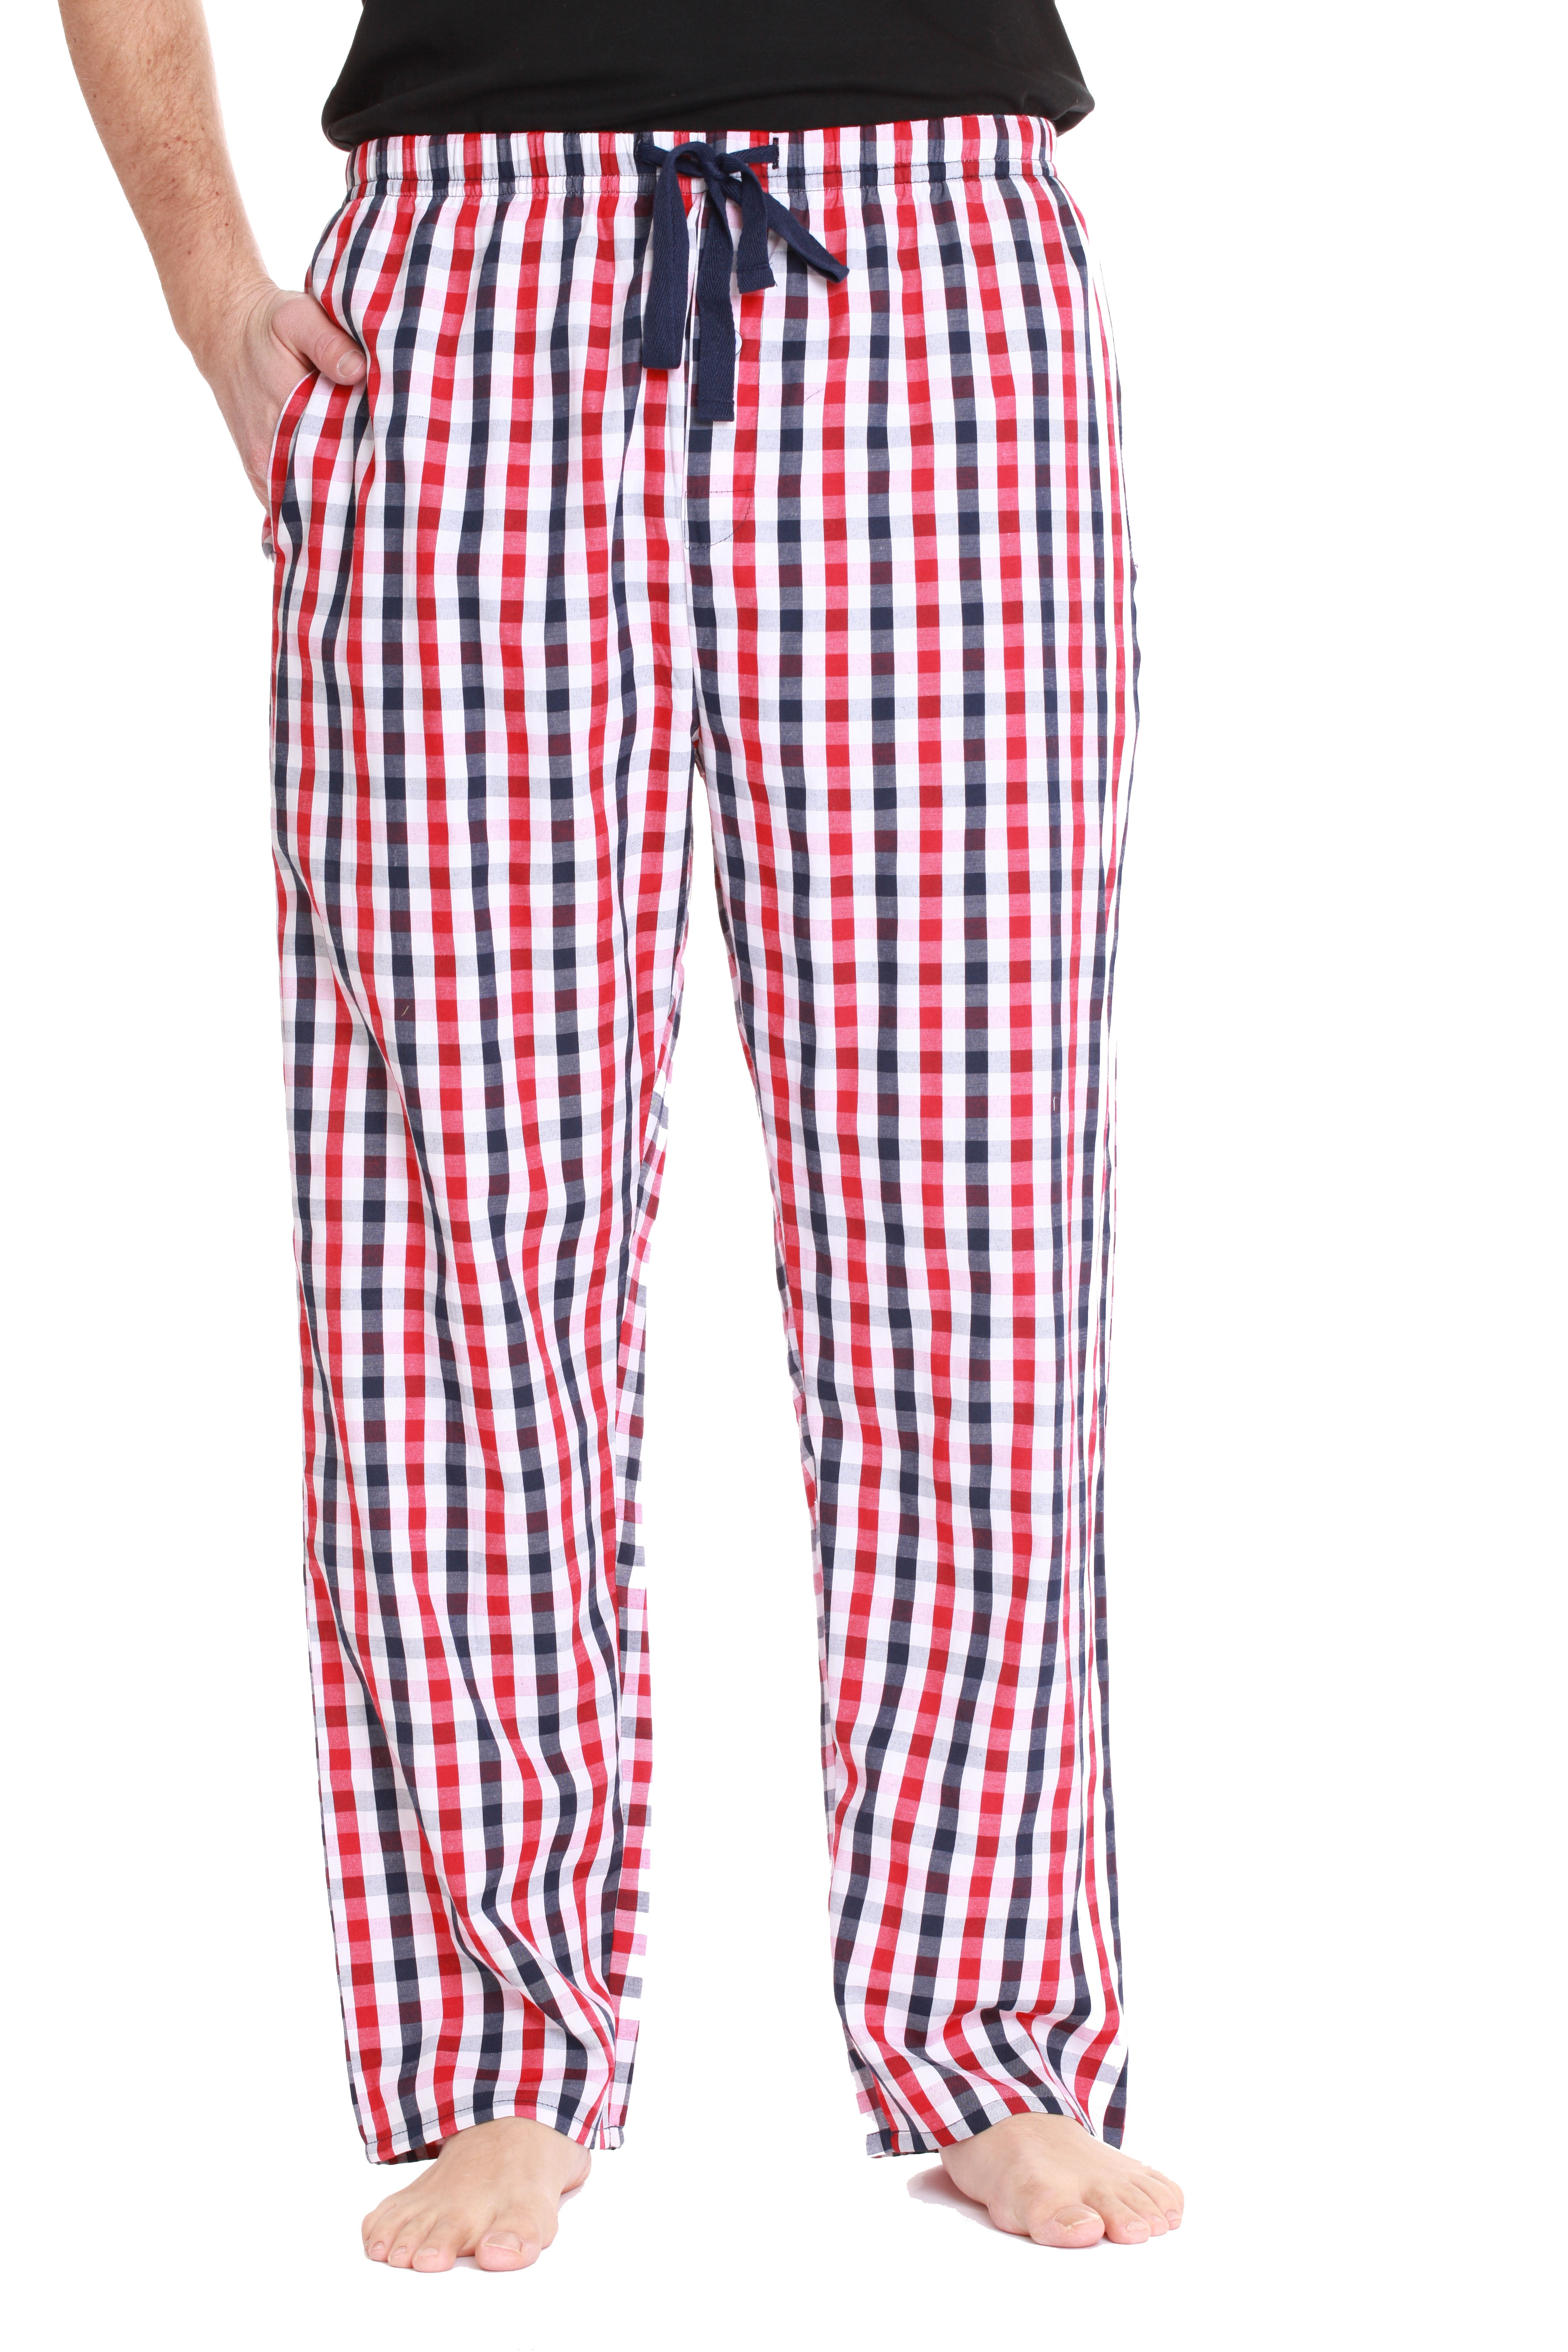 Elastic Waist Open Trails Men's Red Size: L White & Blue Plaid Lounge Pants 